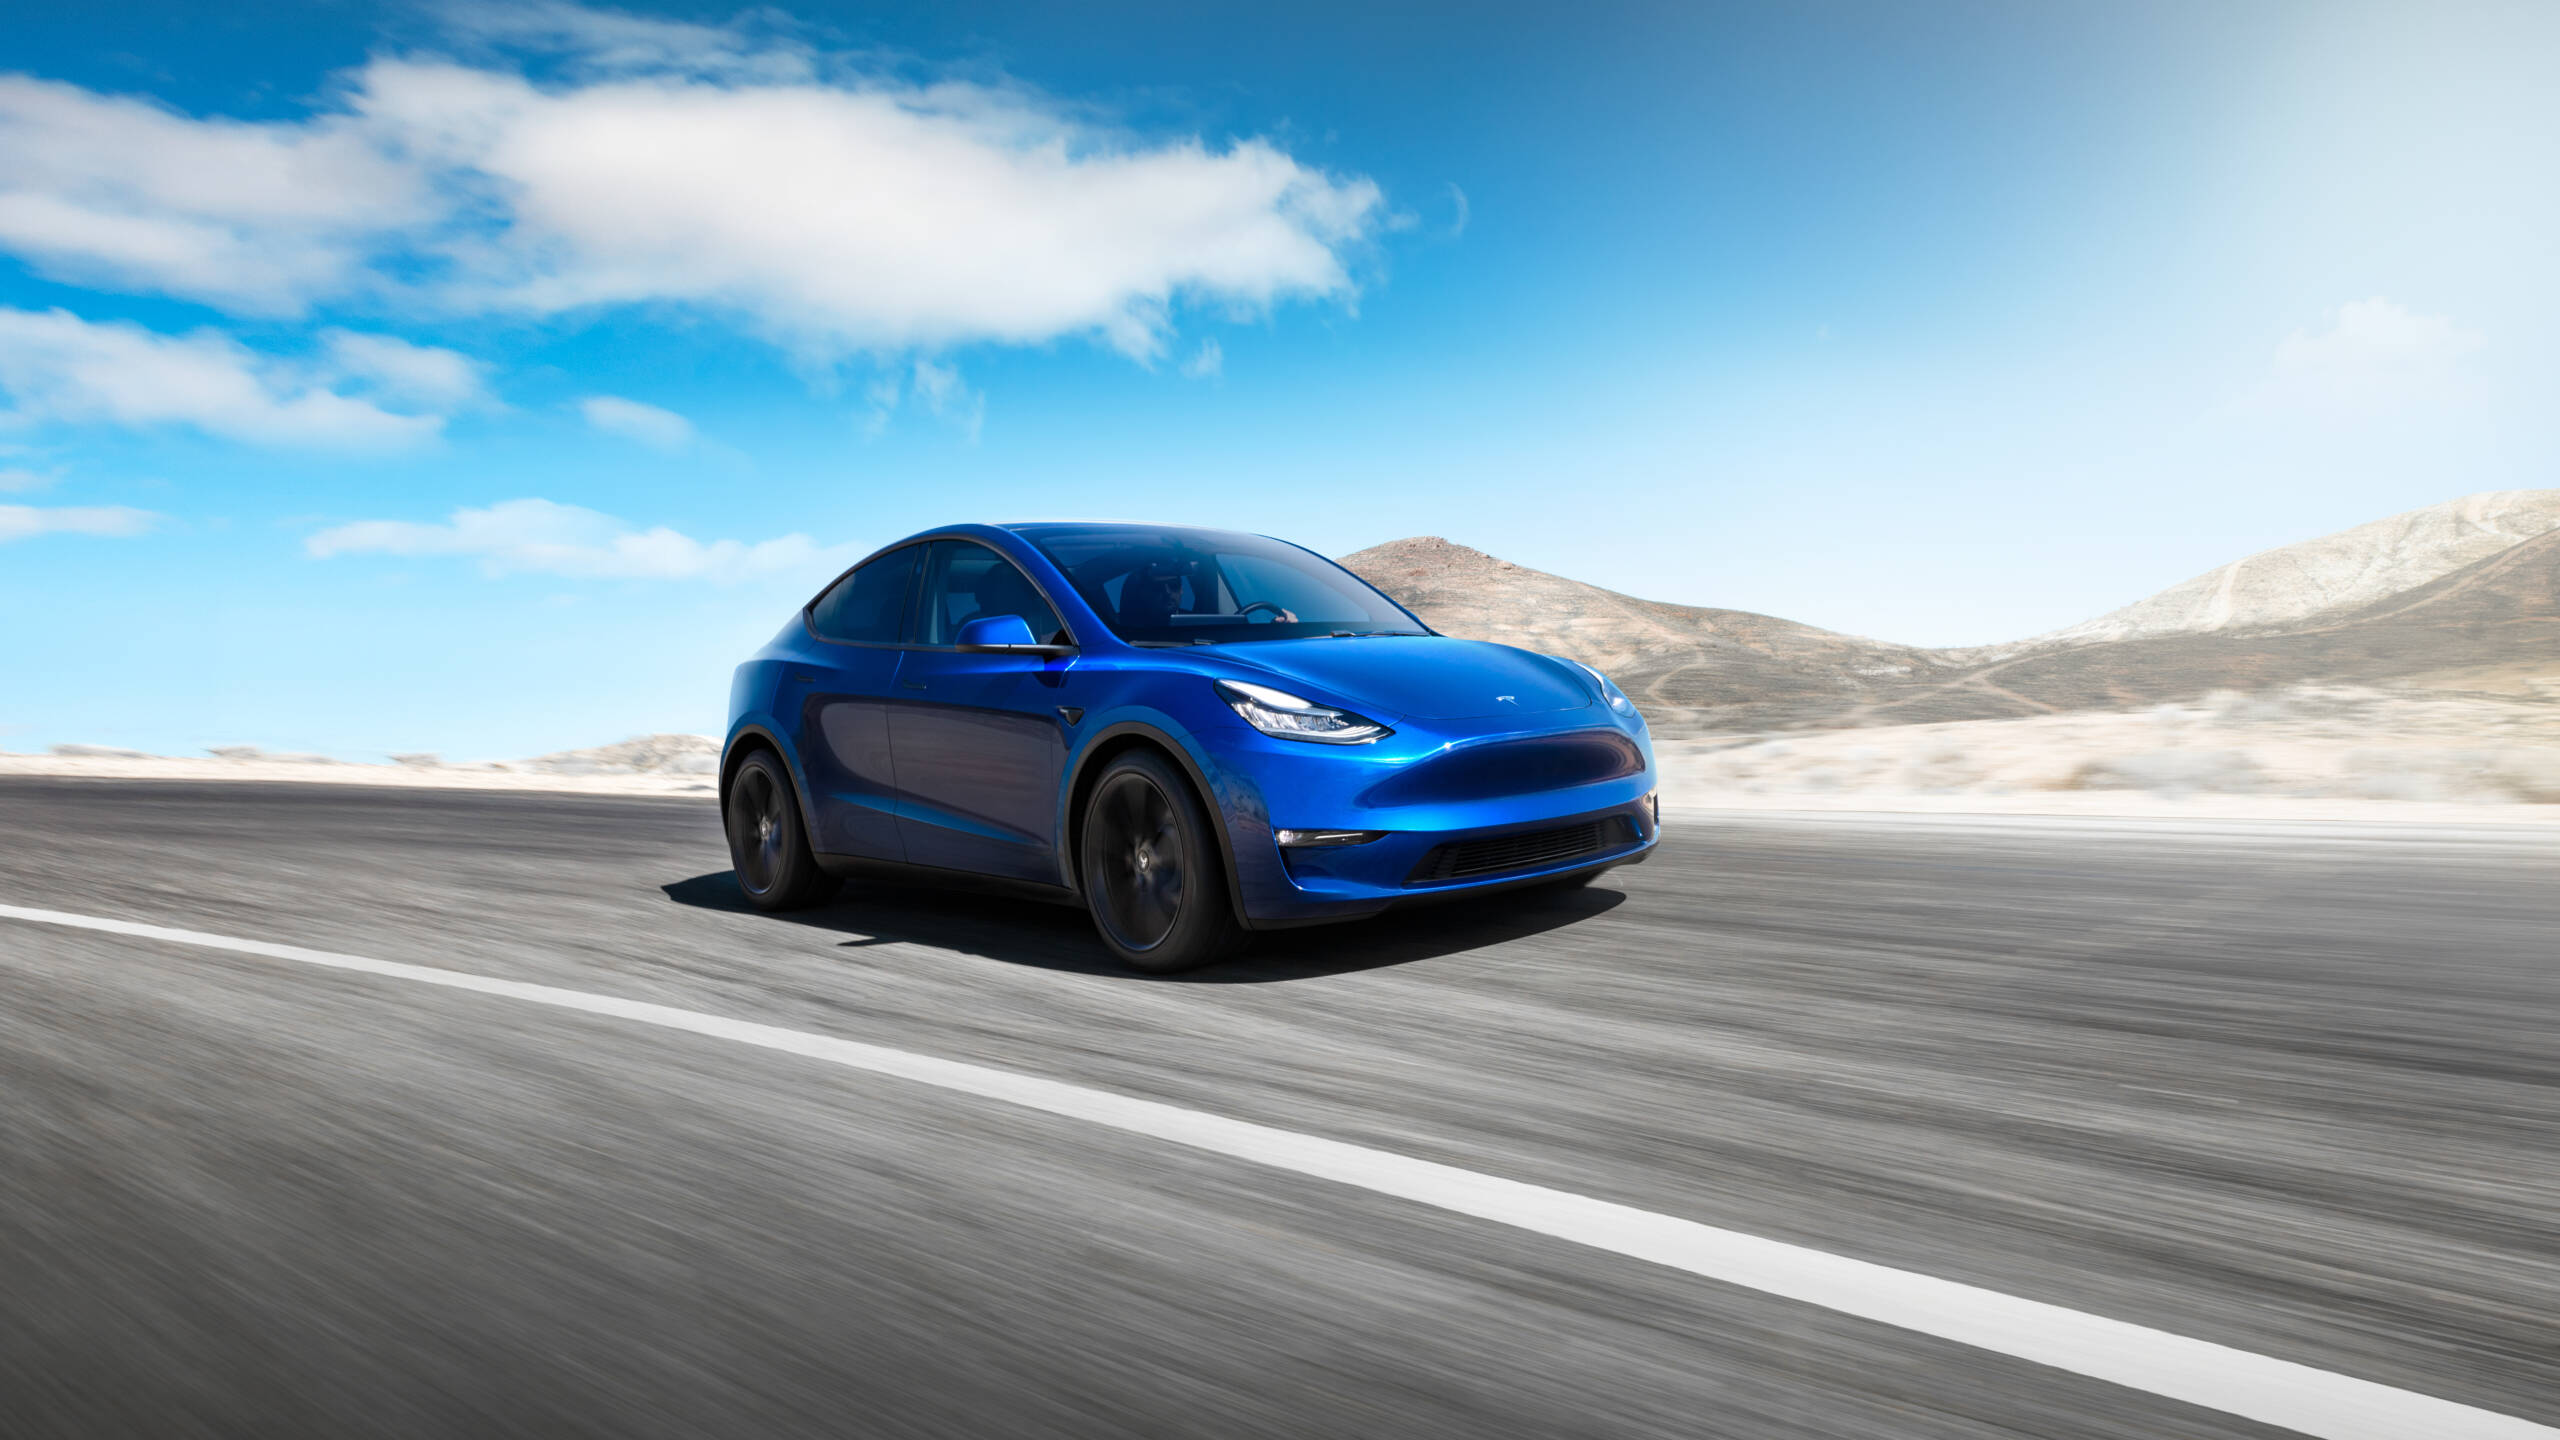 Innovation bei Elektroautos: Tesla und die Chinesen dominieren die Top Ten